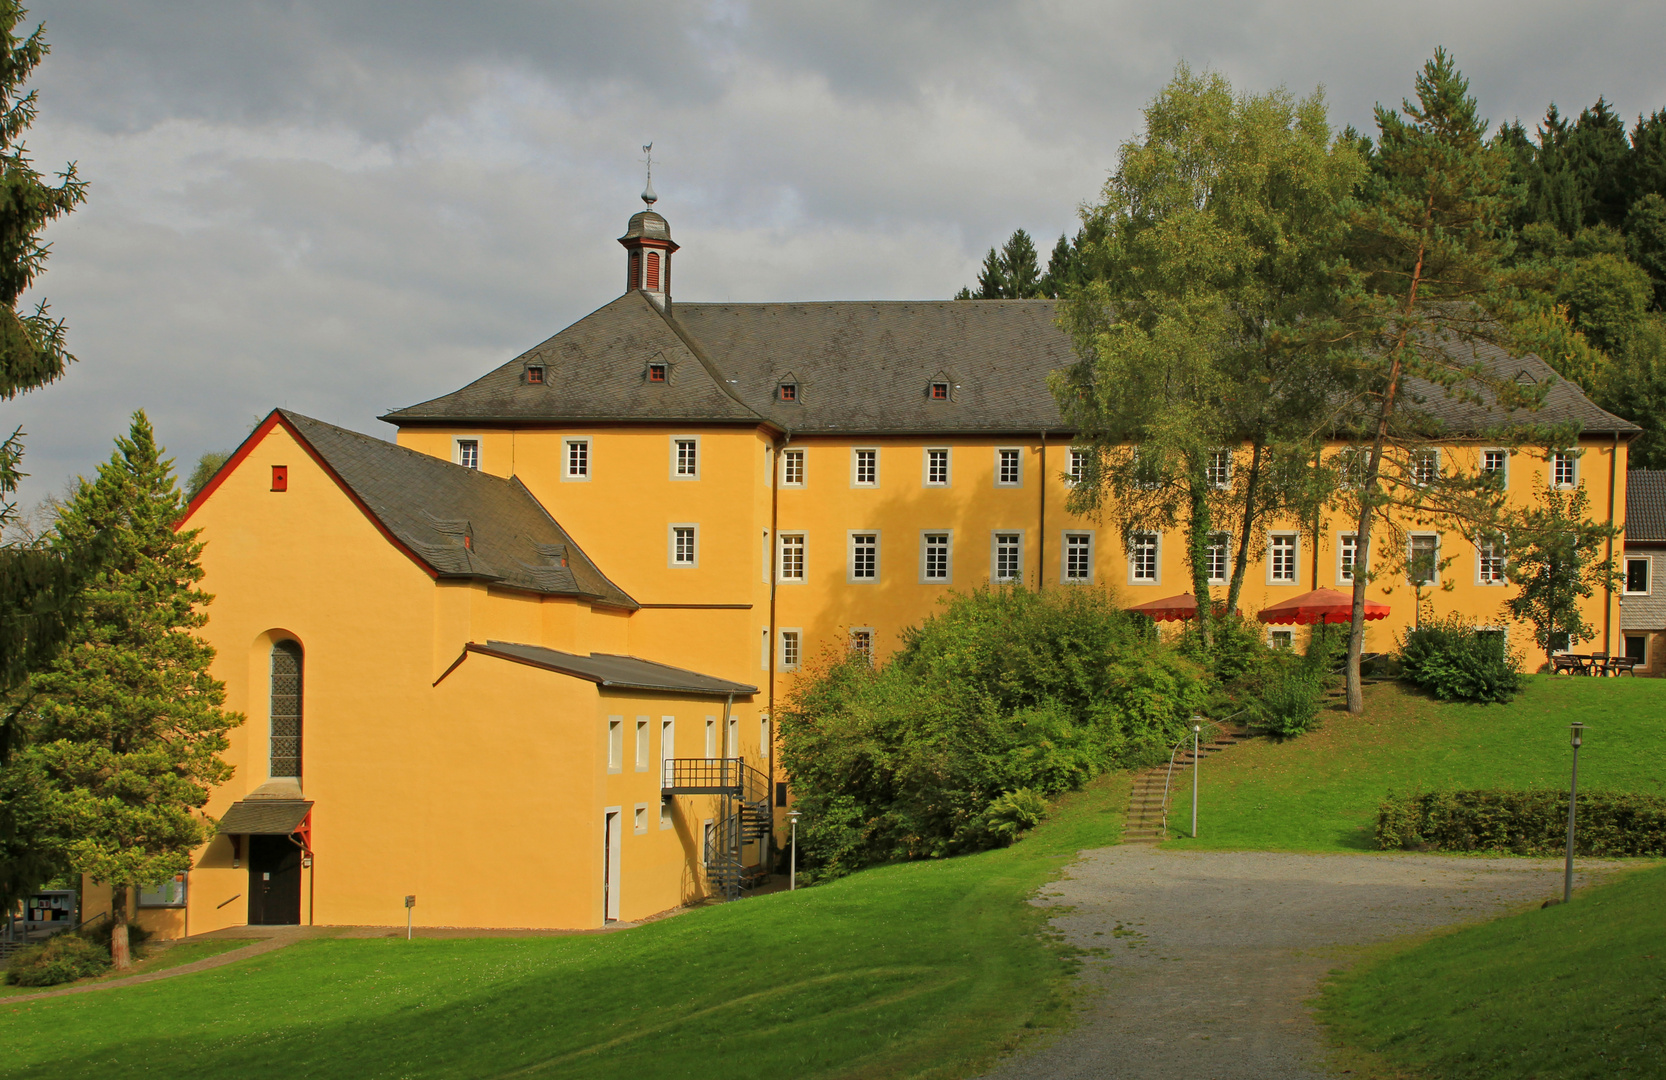 Kloster Marienthal im Westerwald (reload)